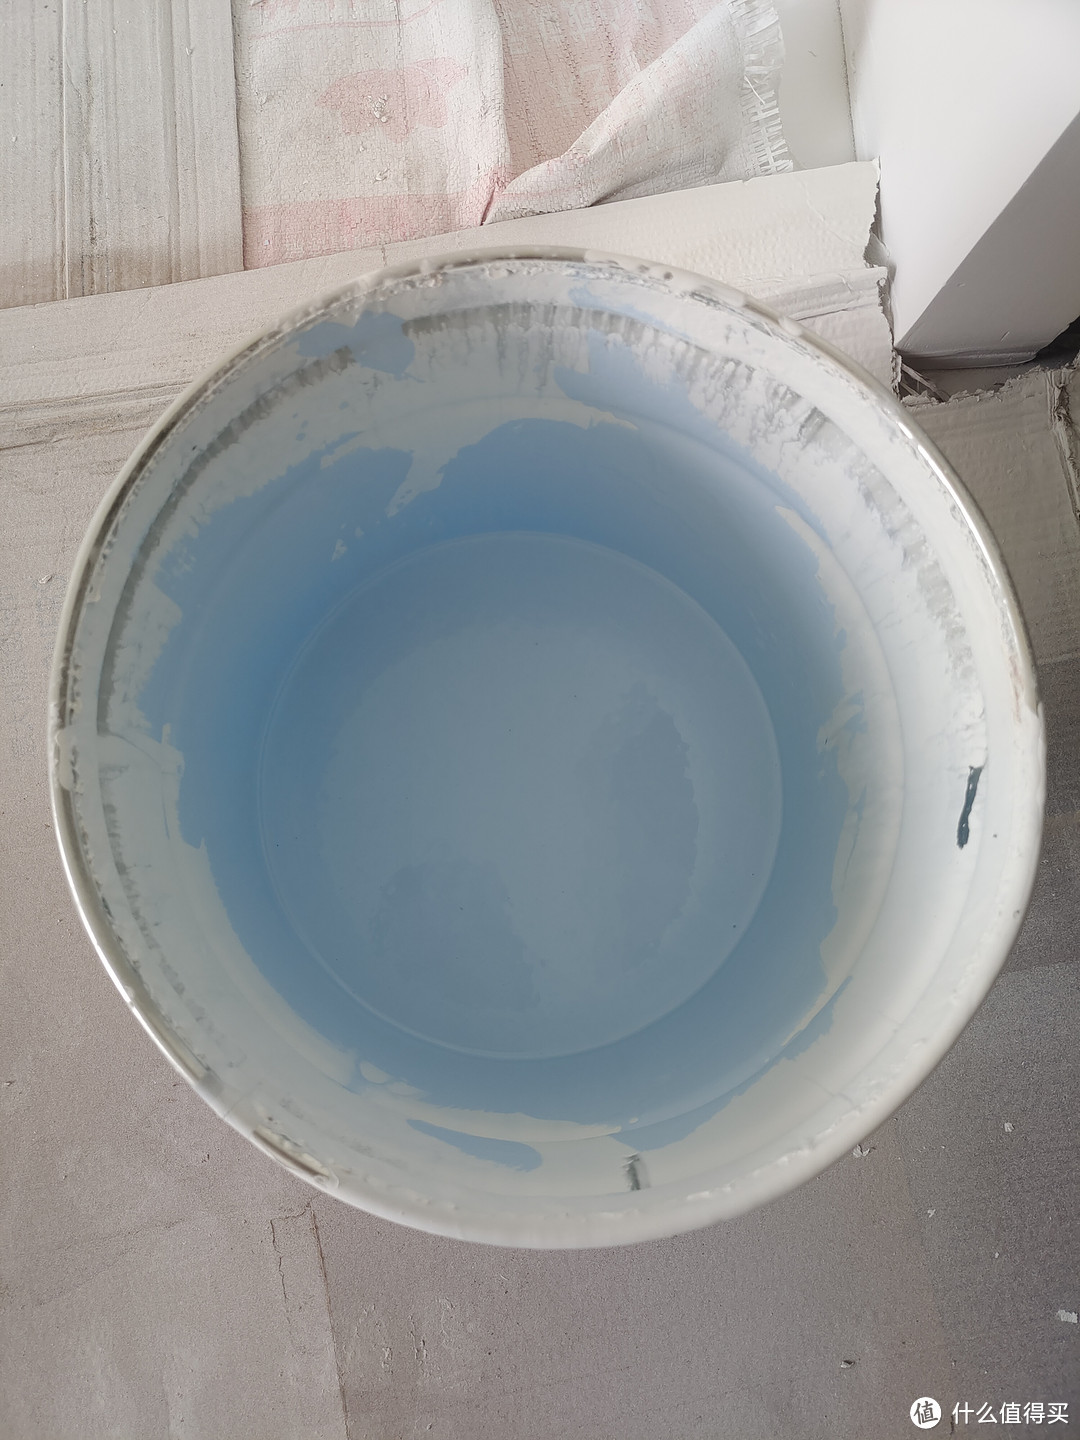 ▲将色漆倒进能塞进滚筒的大桶，兑一点点水，兑水量不要超过色漆总量的20%